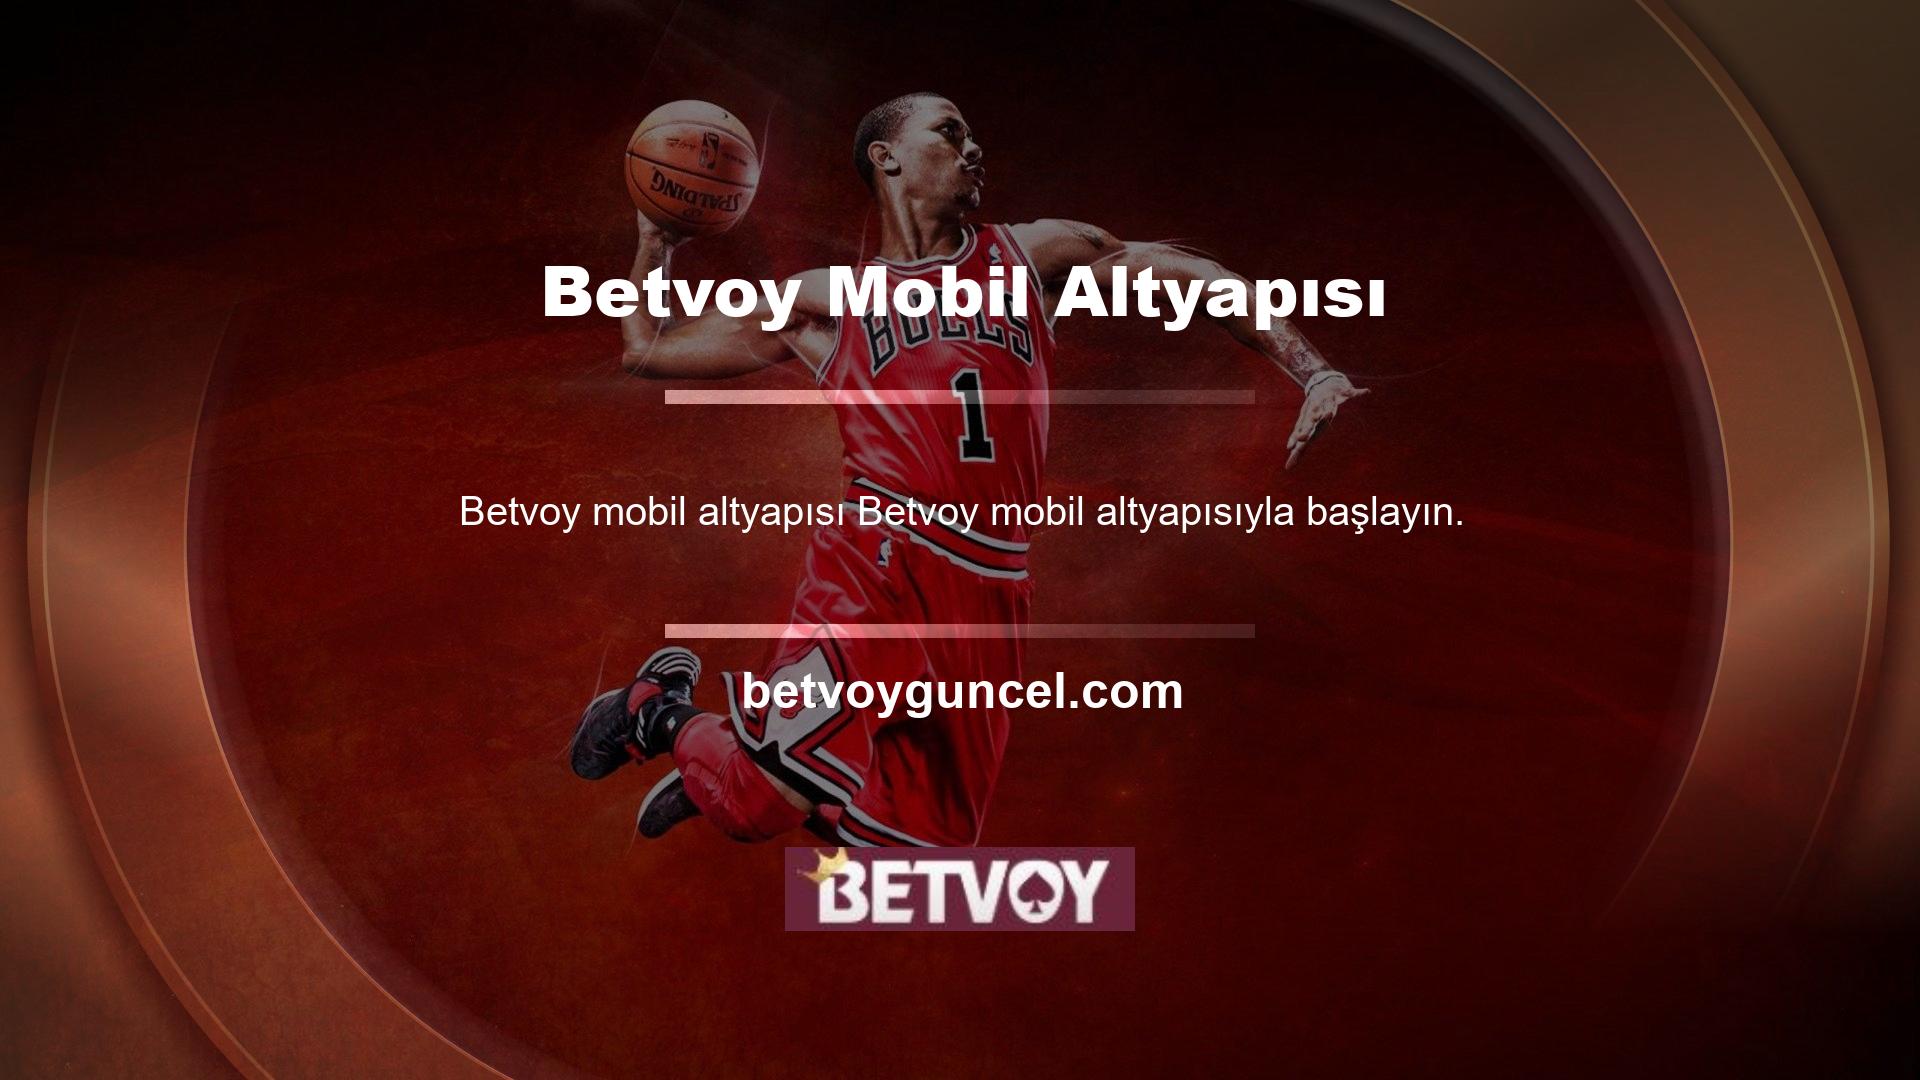 Çoğu kullanıcı Betvoy kayıt olduklarında zaten mobil platformları kullanıyor